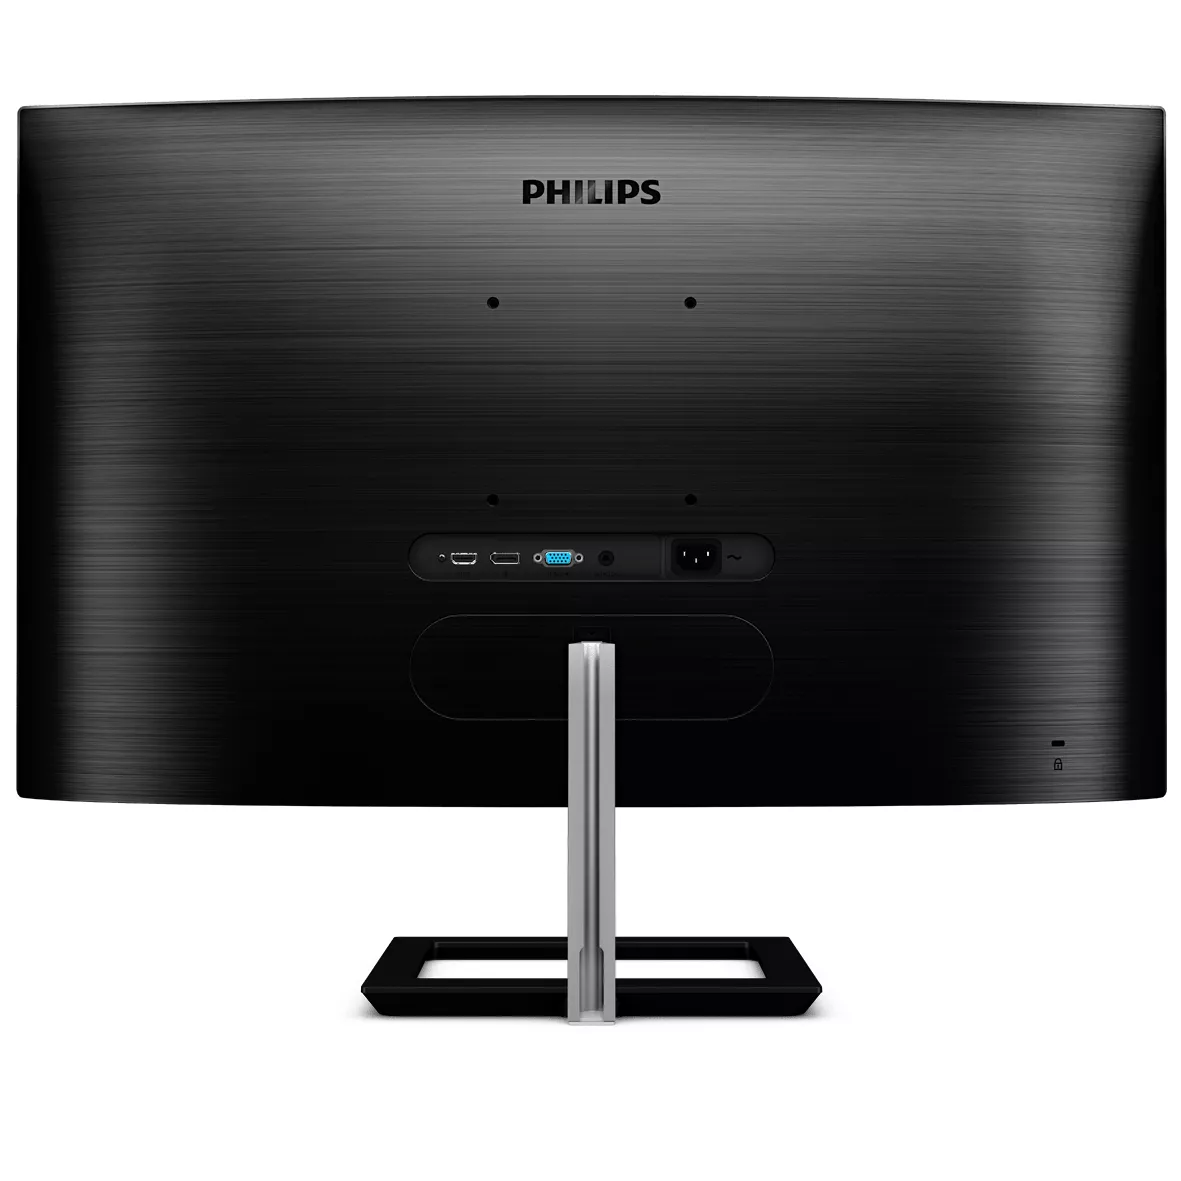 Vente PHILIPS 325E1C/00 - 31.5pcs - INCURVE - QHD Philips au meilleur prix - visuel 4